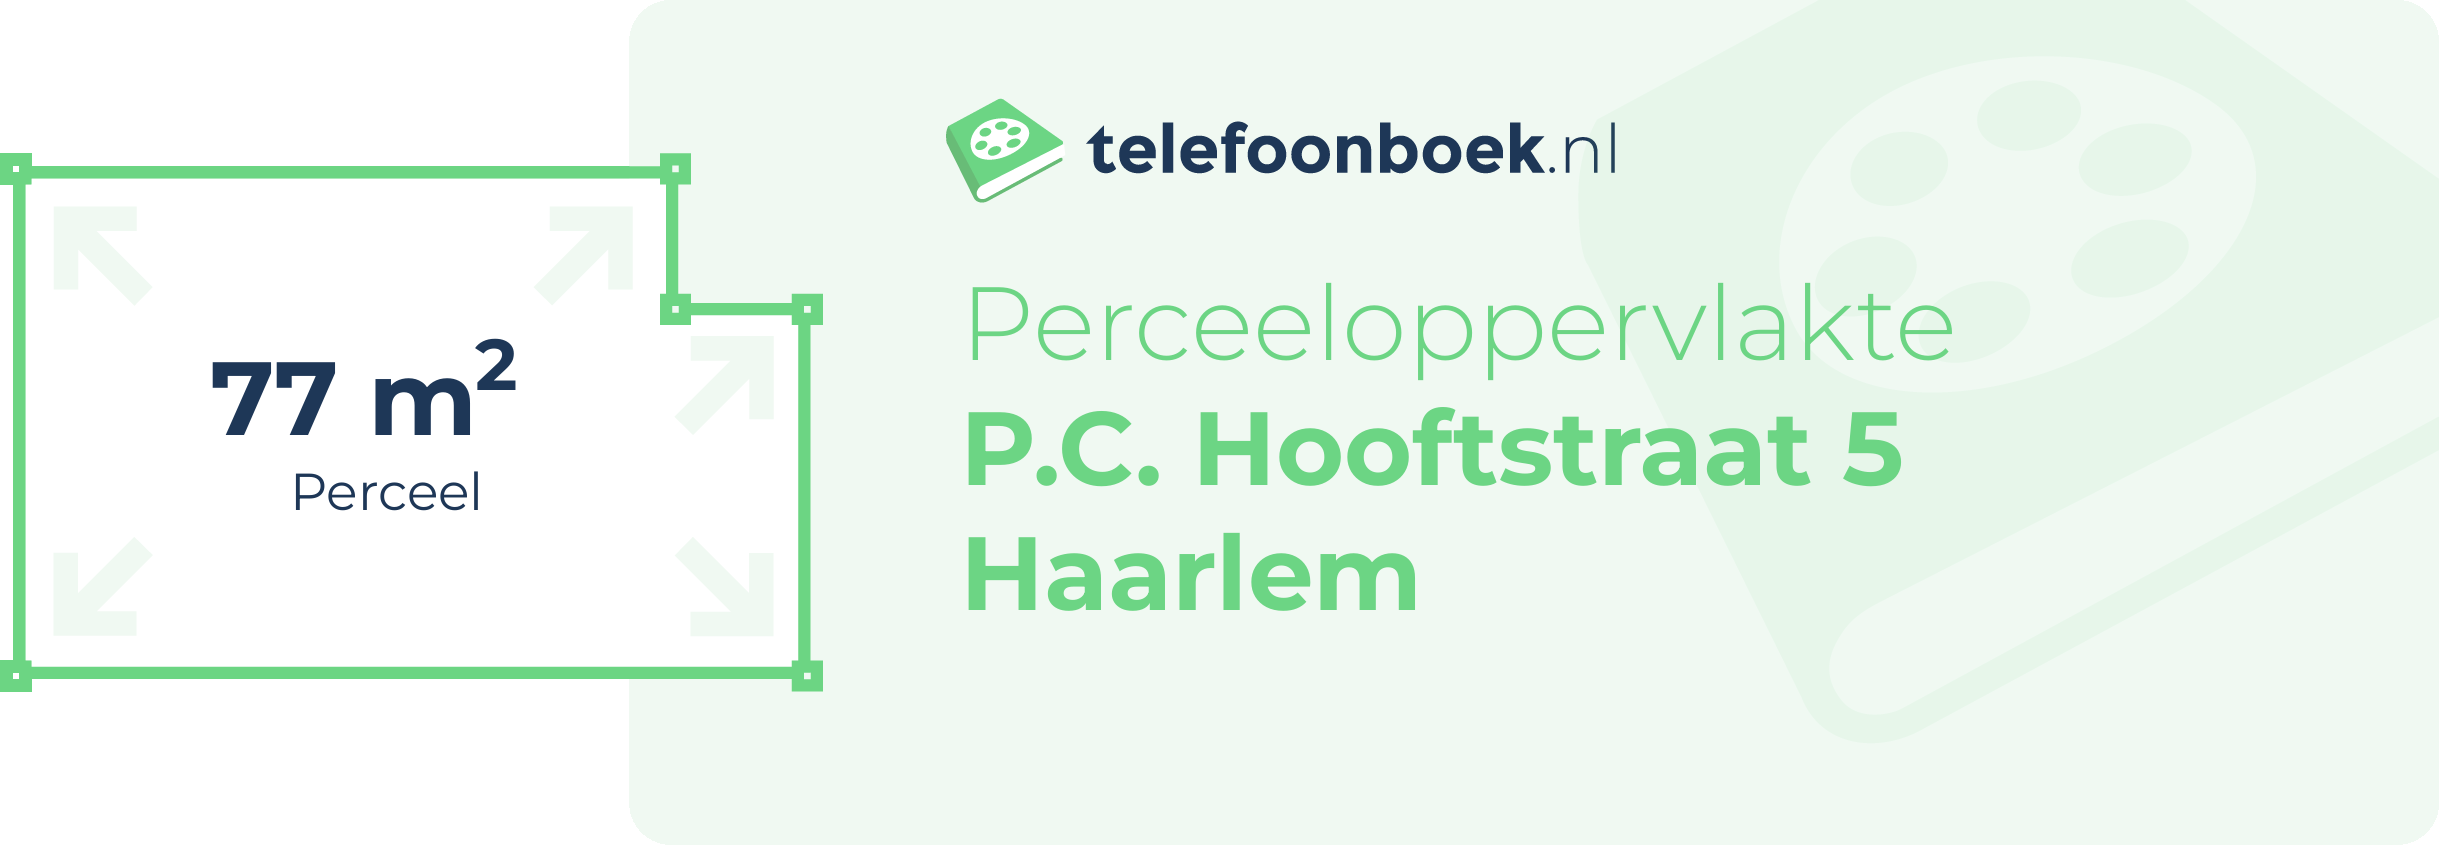 Perceeloppervlakte P.C. Hooftstraat 5 Haarlem